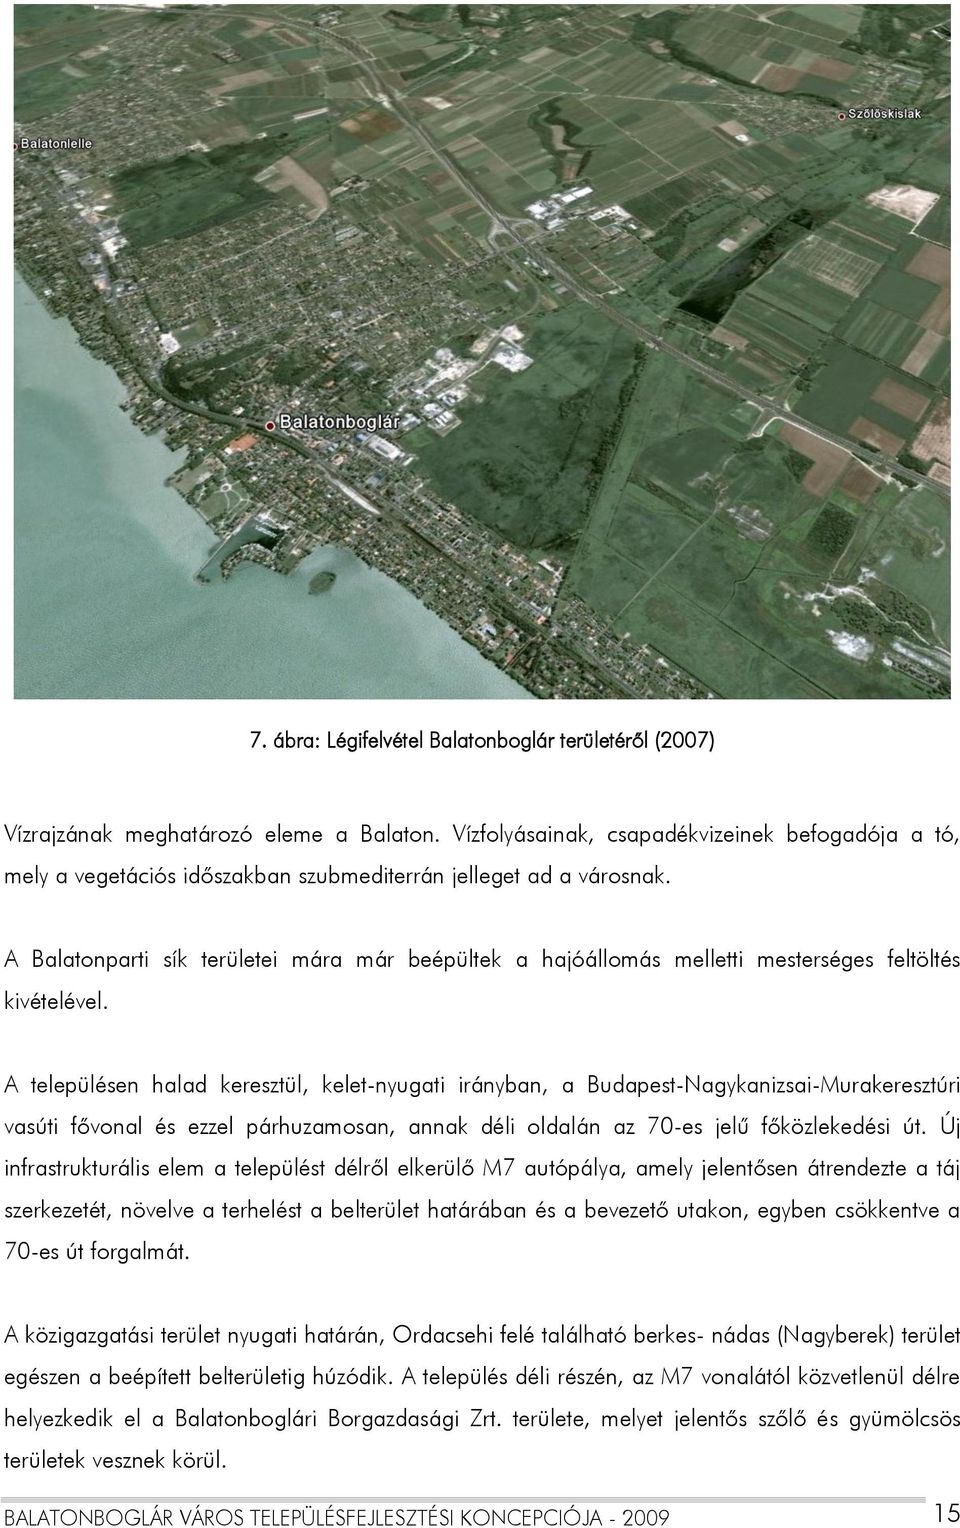 A Balatonparti sík területei mára már beépültek a hajóállomás melletti mesterséges feltöltés kivételével.